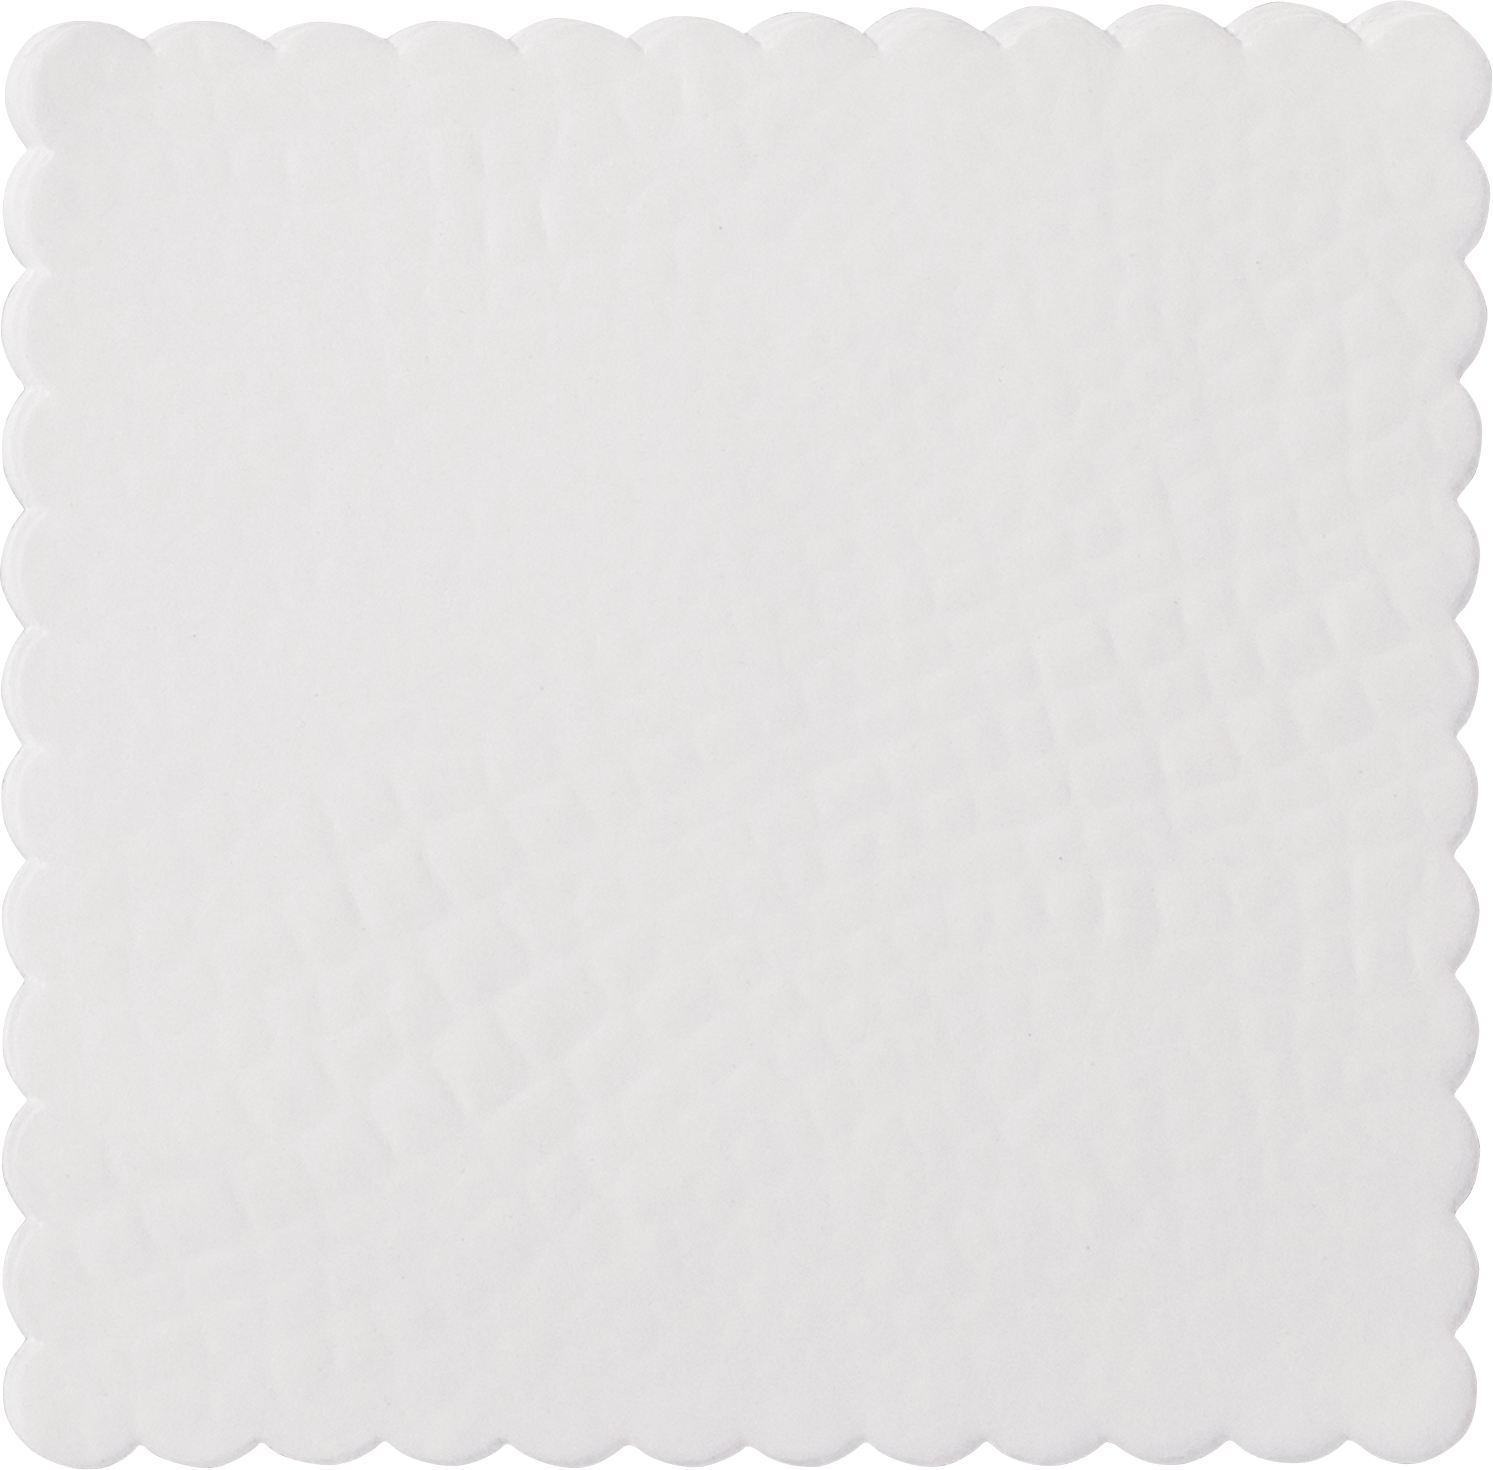 Croco dish paper square, 12 x 12cm